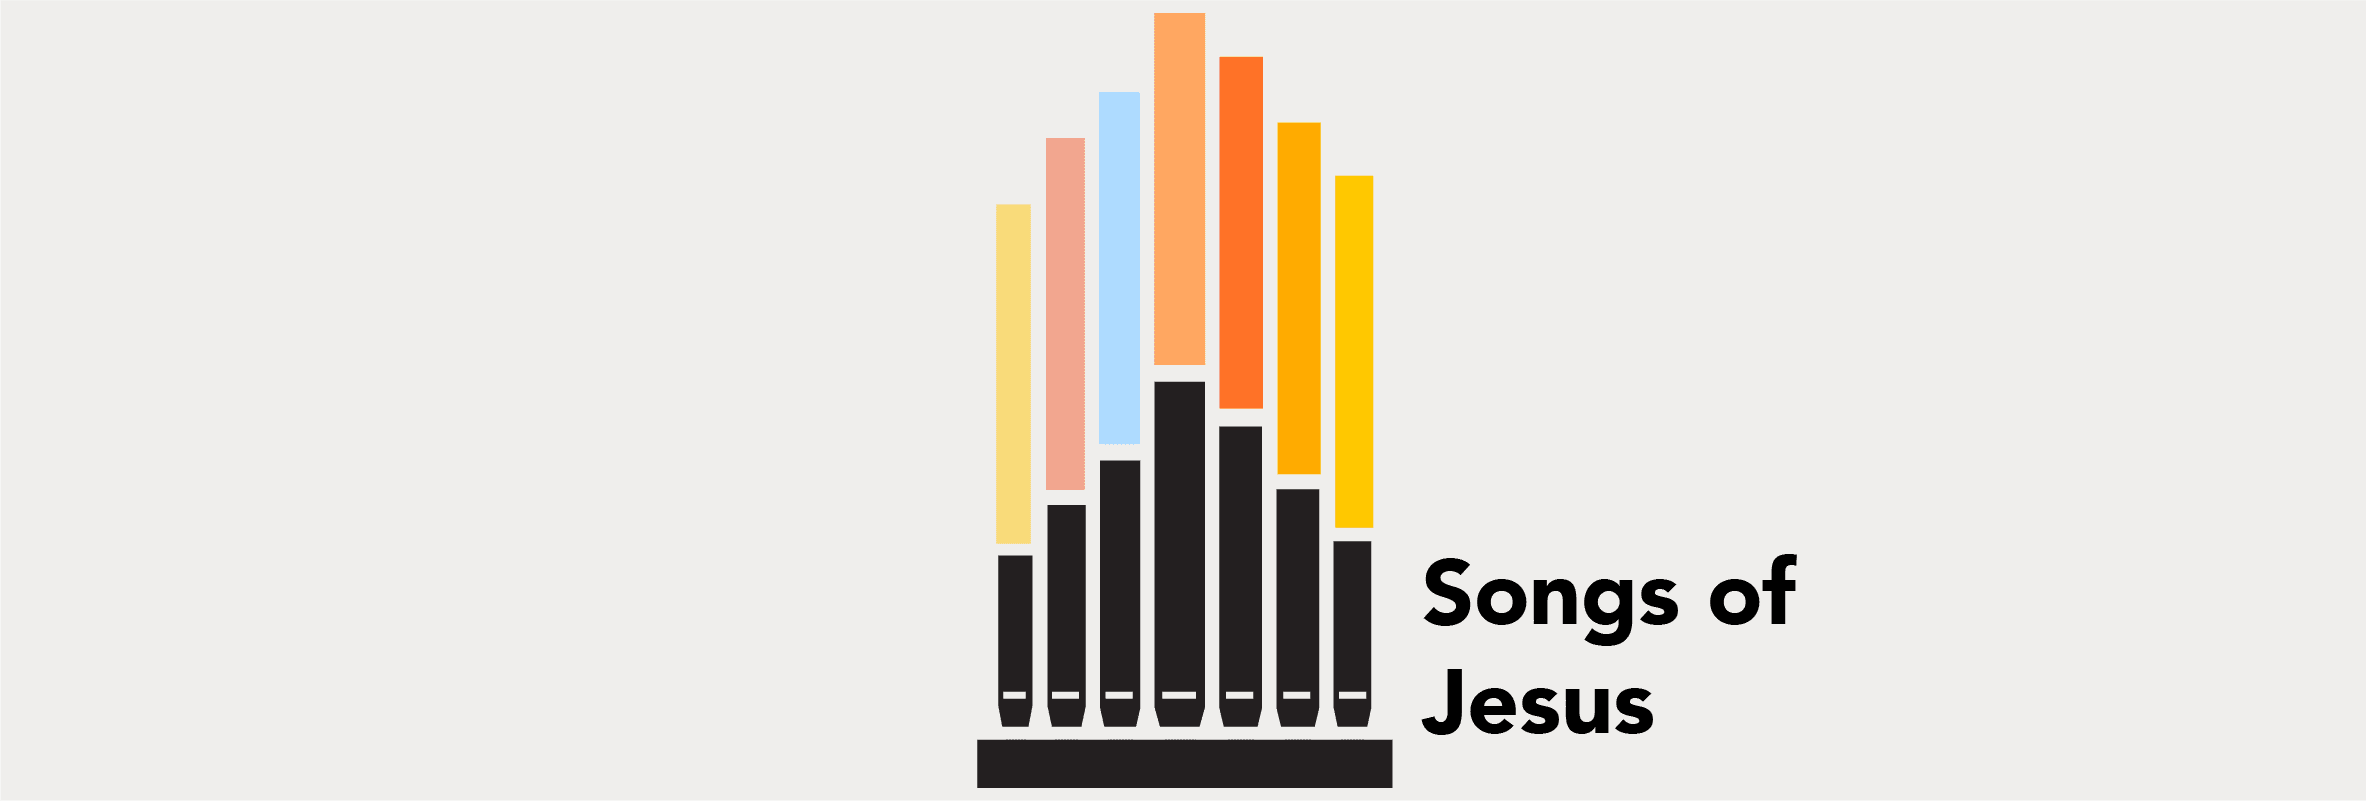 Songs of Jesus